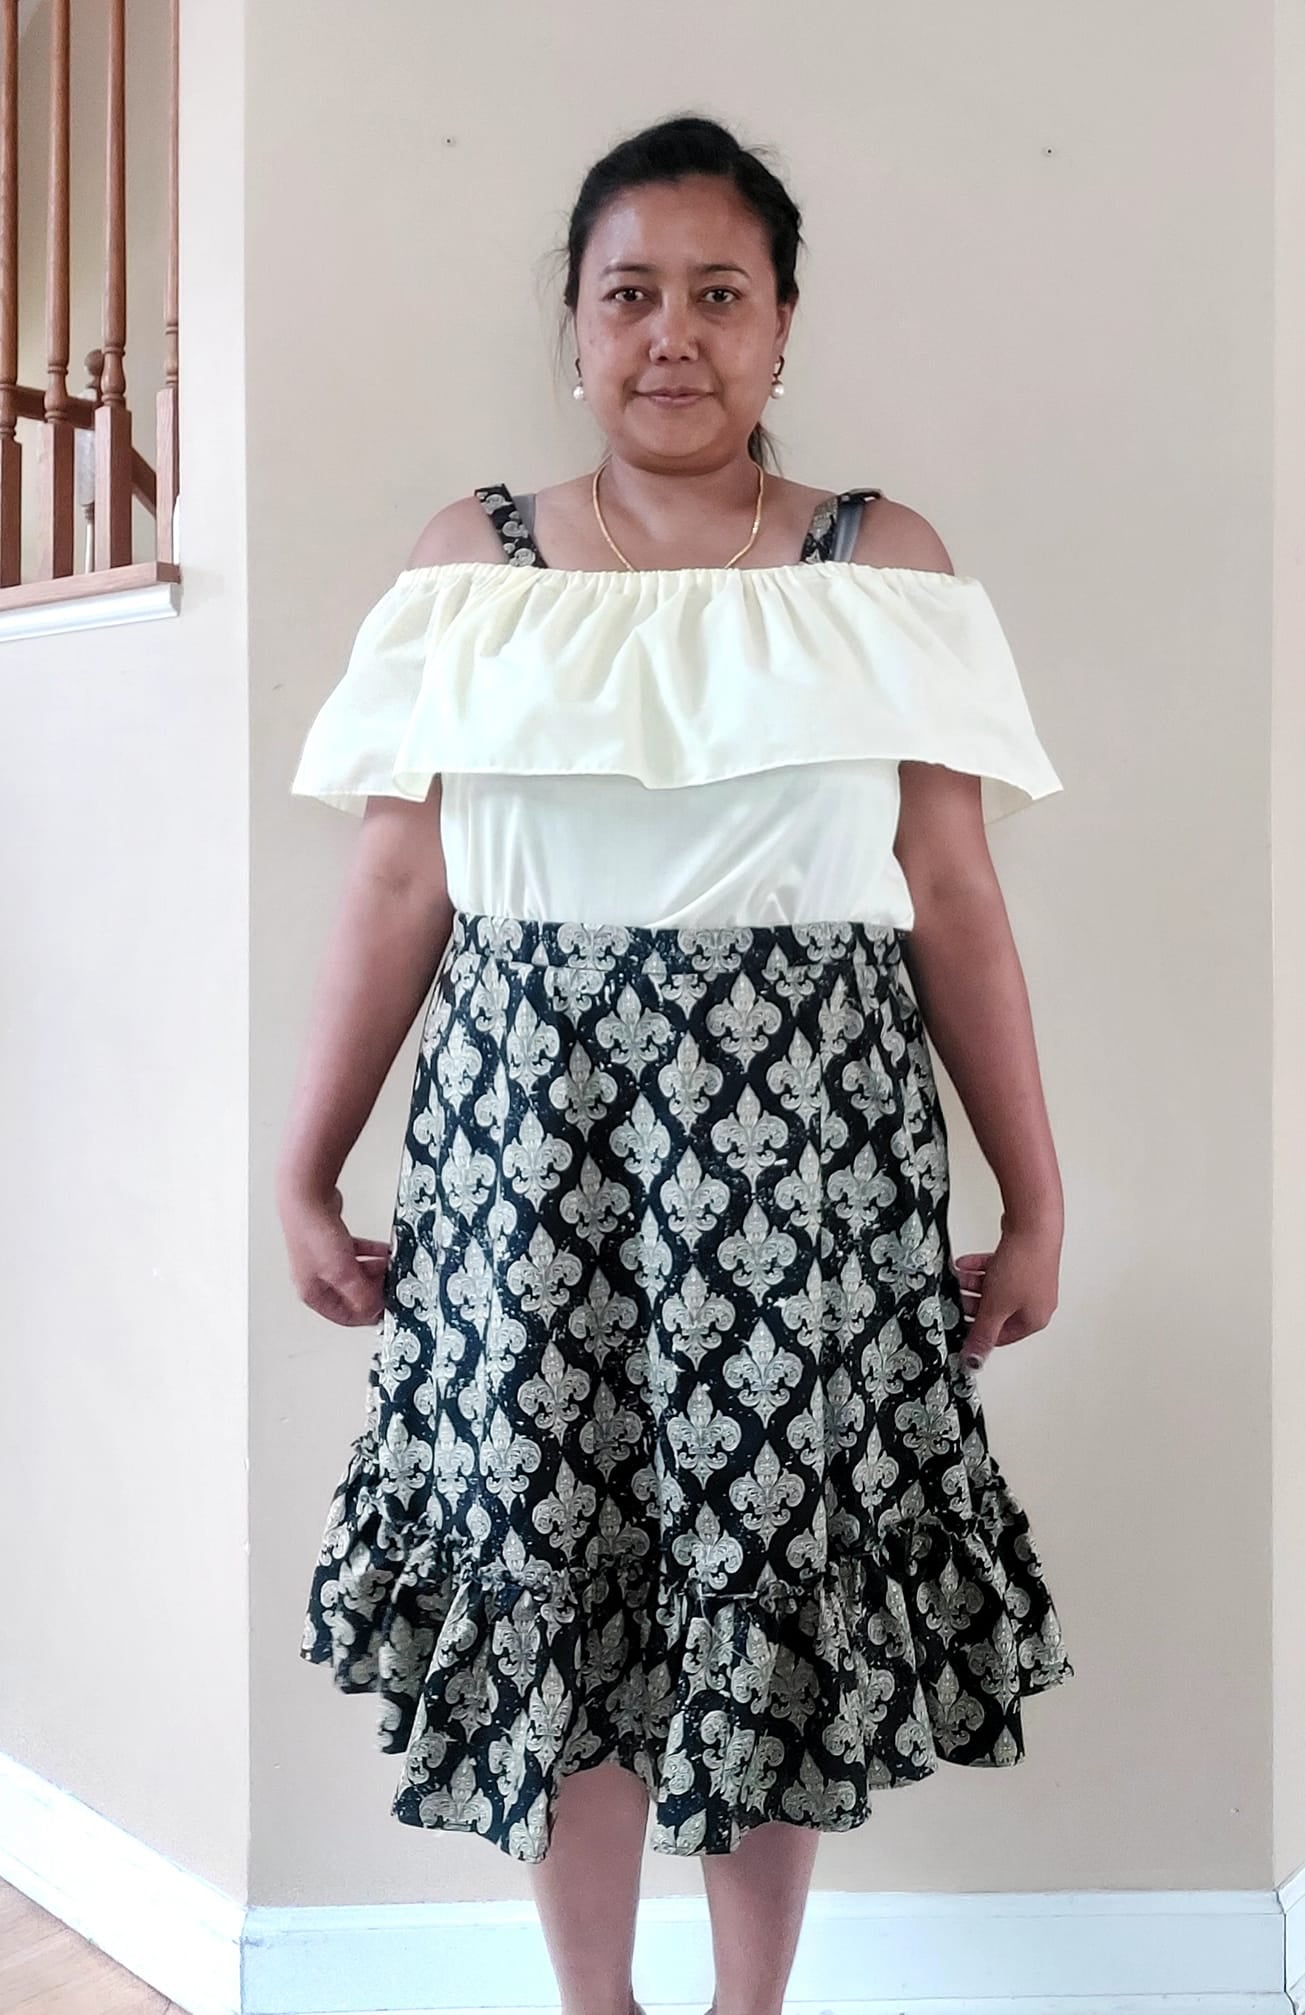 Bridget Dress/Top/Skirt